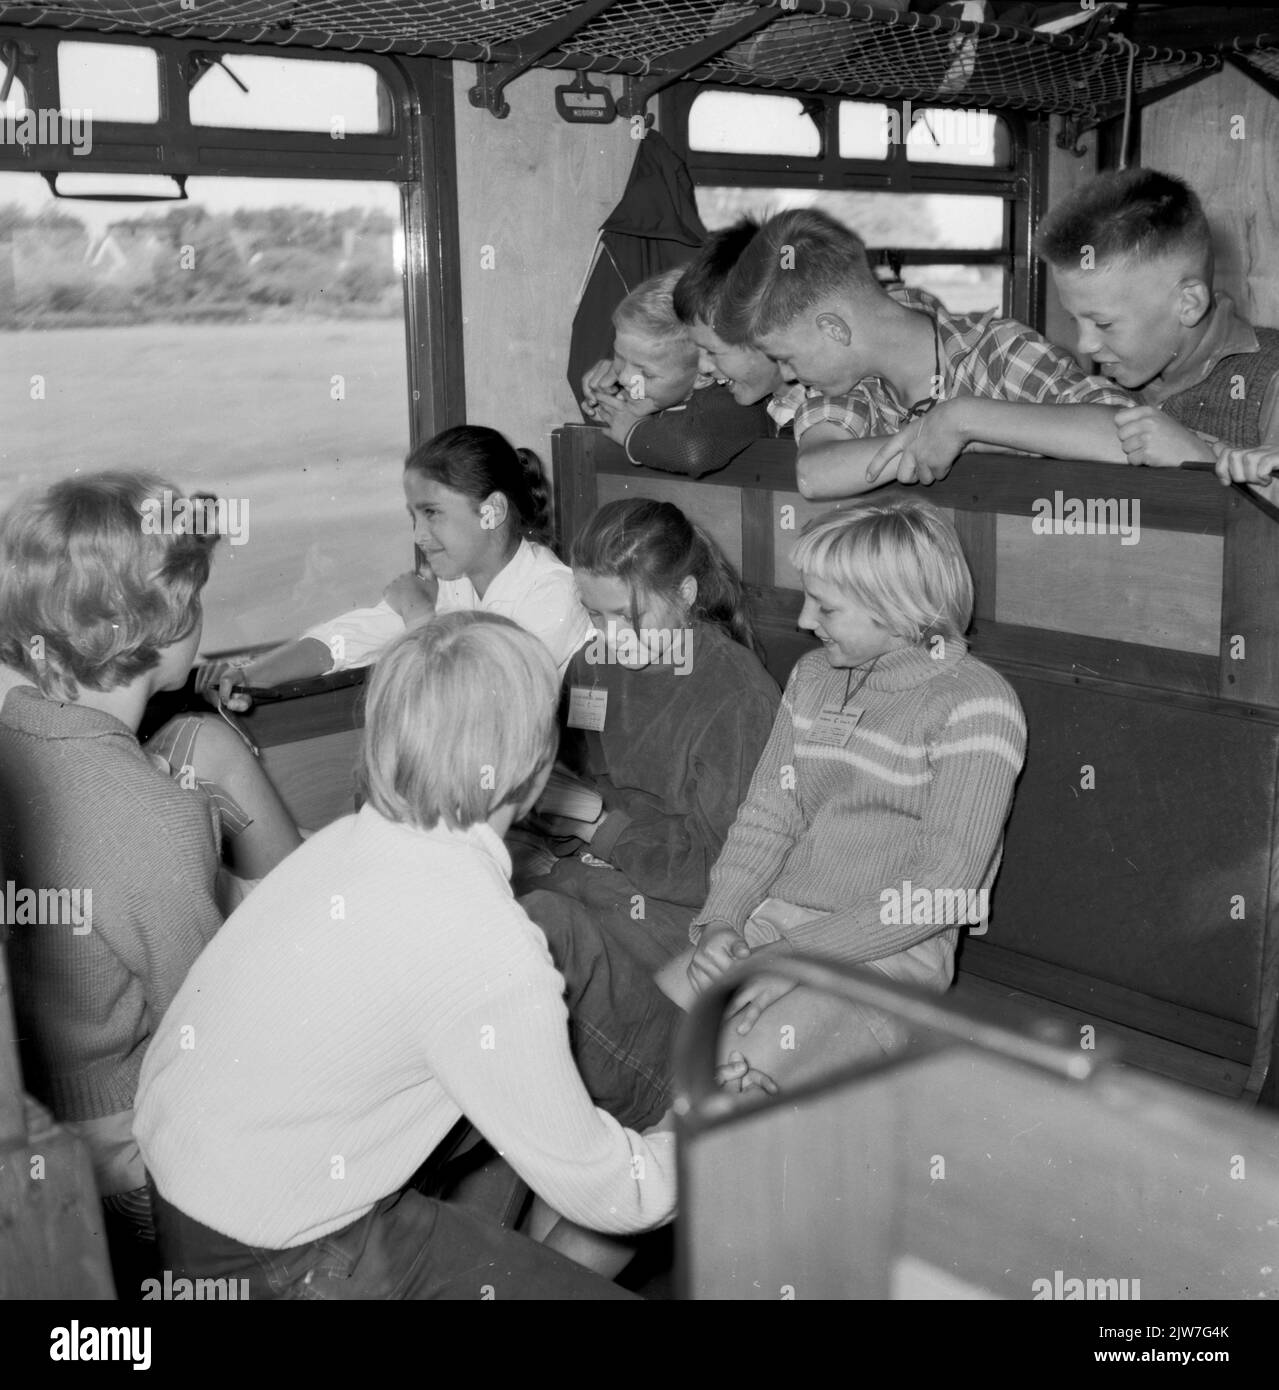 Immagine dei bambini di Groningen nel treno speciale per bambini in occasione della festa dei bambini. Foto Stock